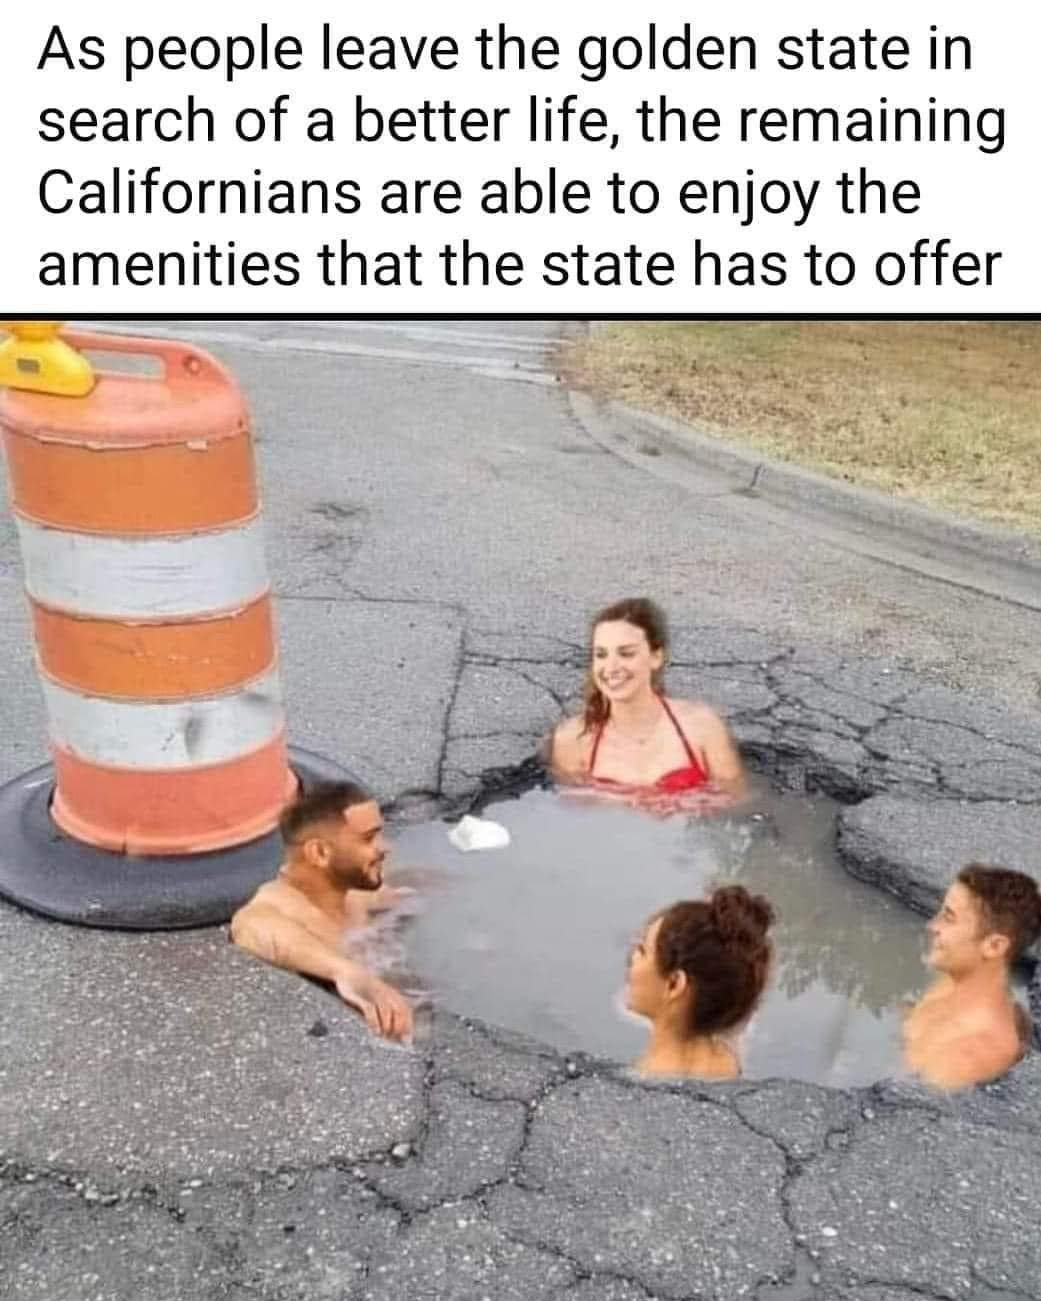 Meme mocking California potholes.